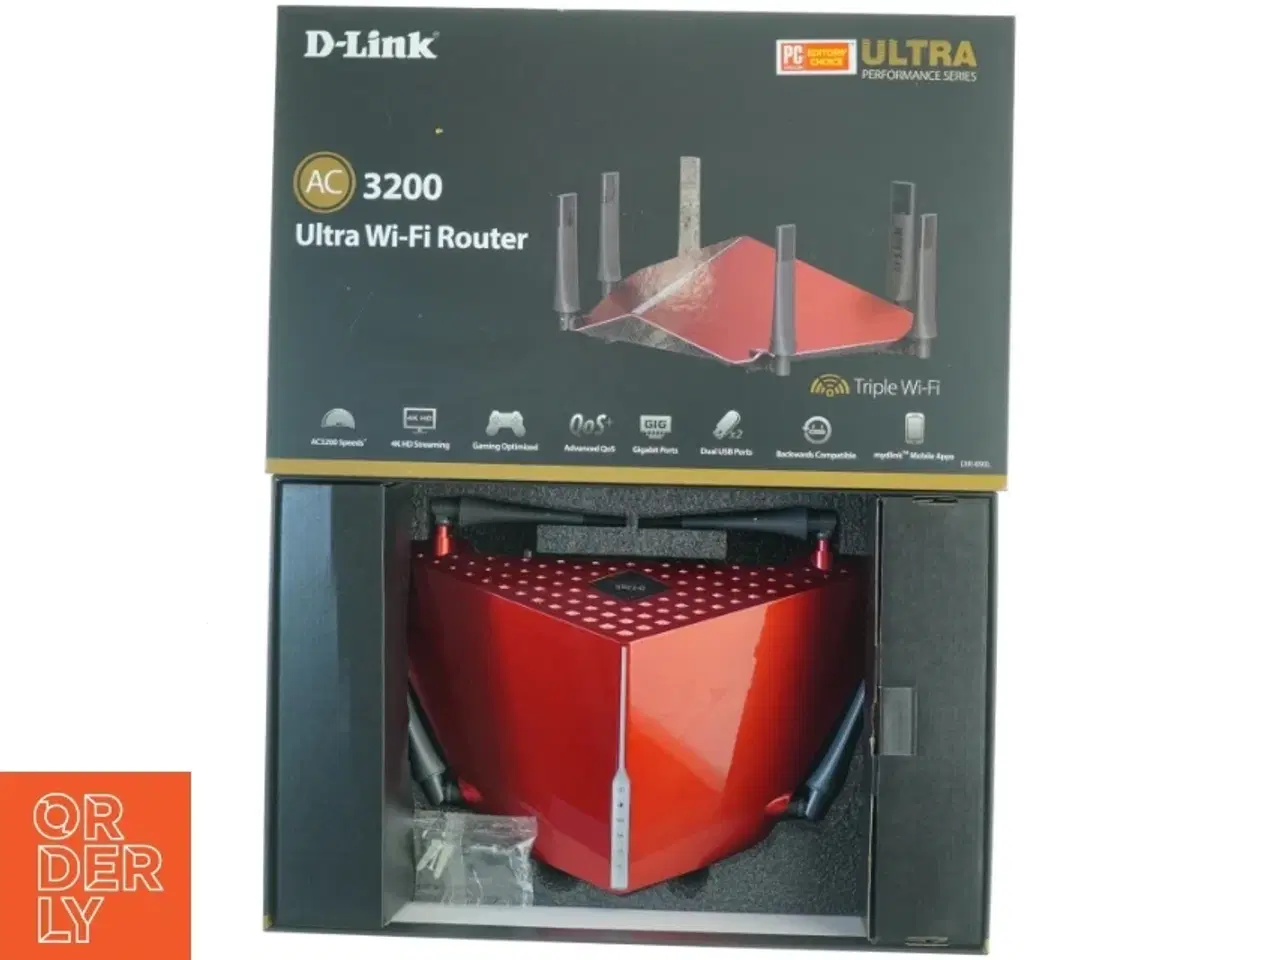 Billede 1 - D-Link AC3200 Ultra Wi-Fi Router fra D-Link (str. 44 x 28 cm)